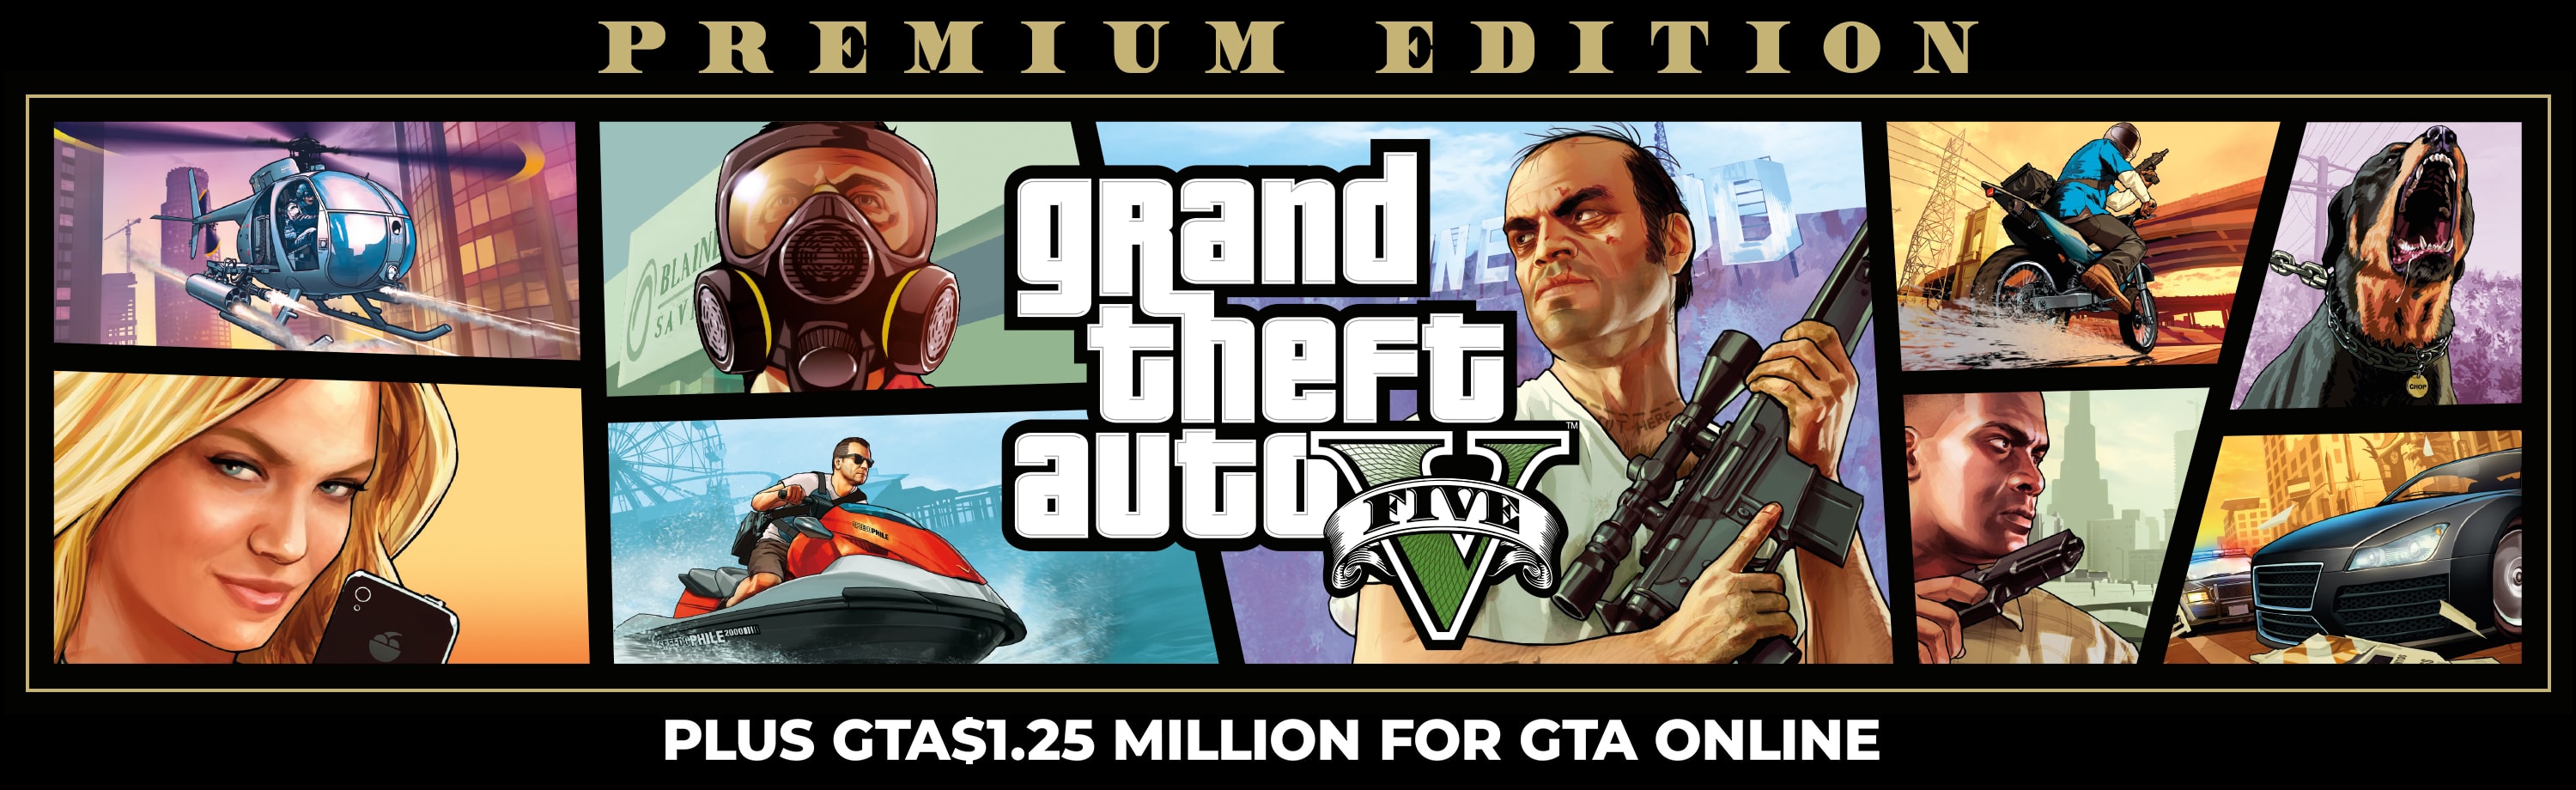 Grand Theft Auto V + GTA$1.25 Million